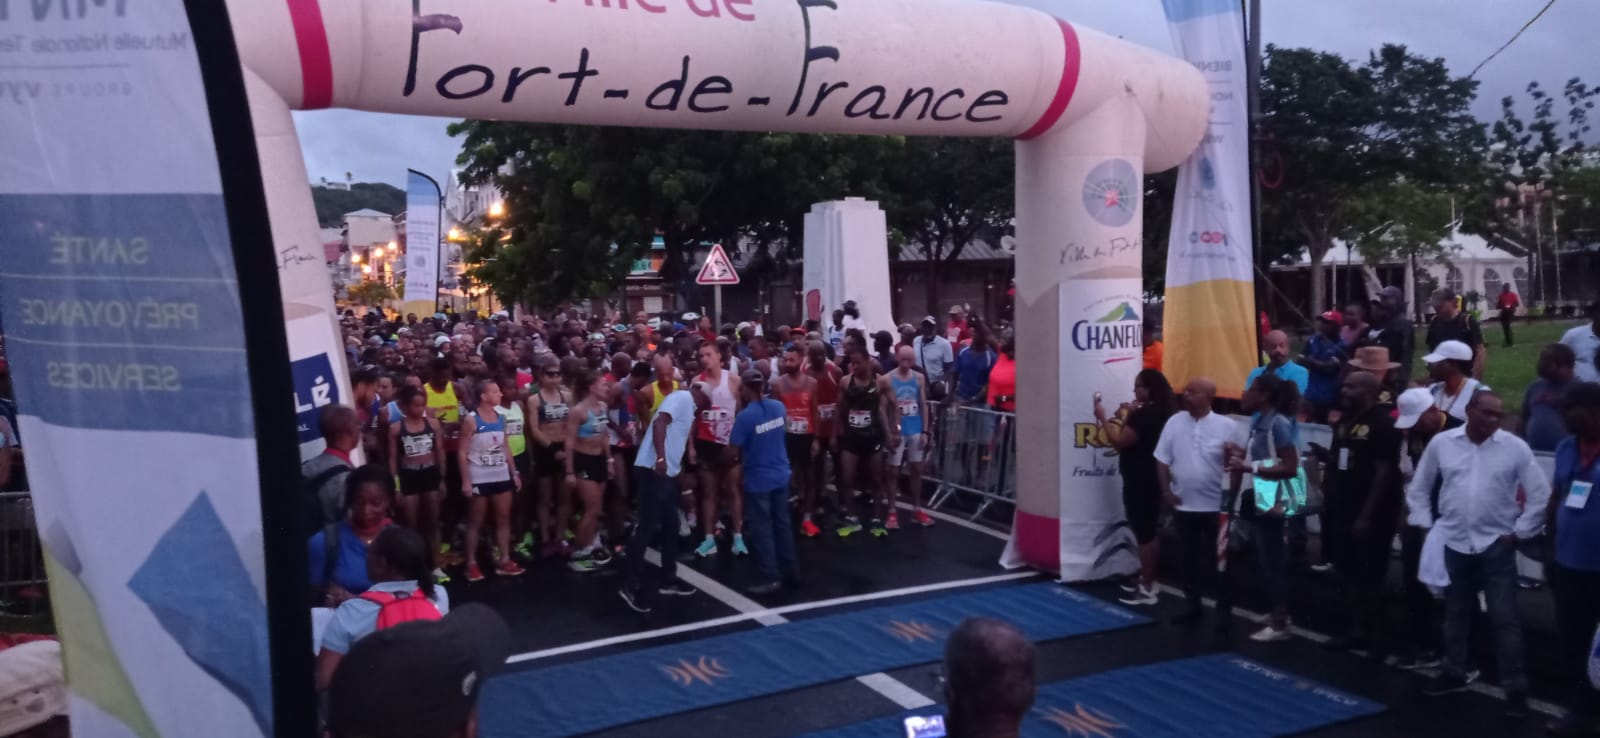     Coup d'envoi de la 36e édition du Semi-Marathon de Fort-de-France

